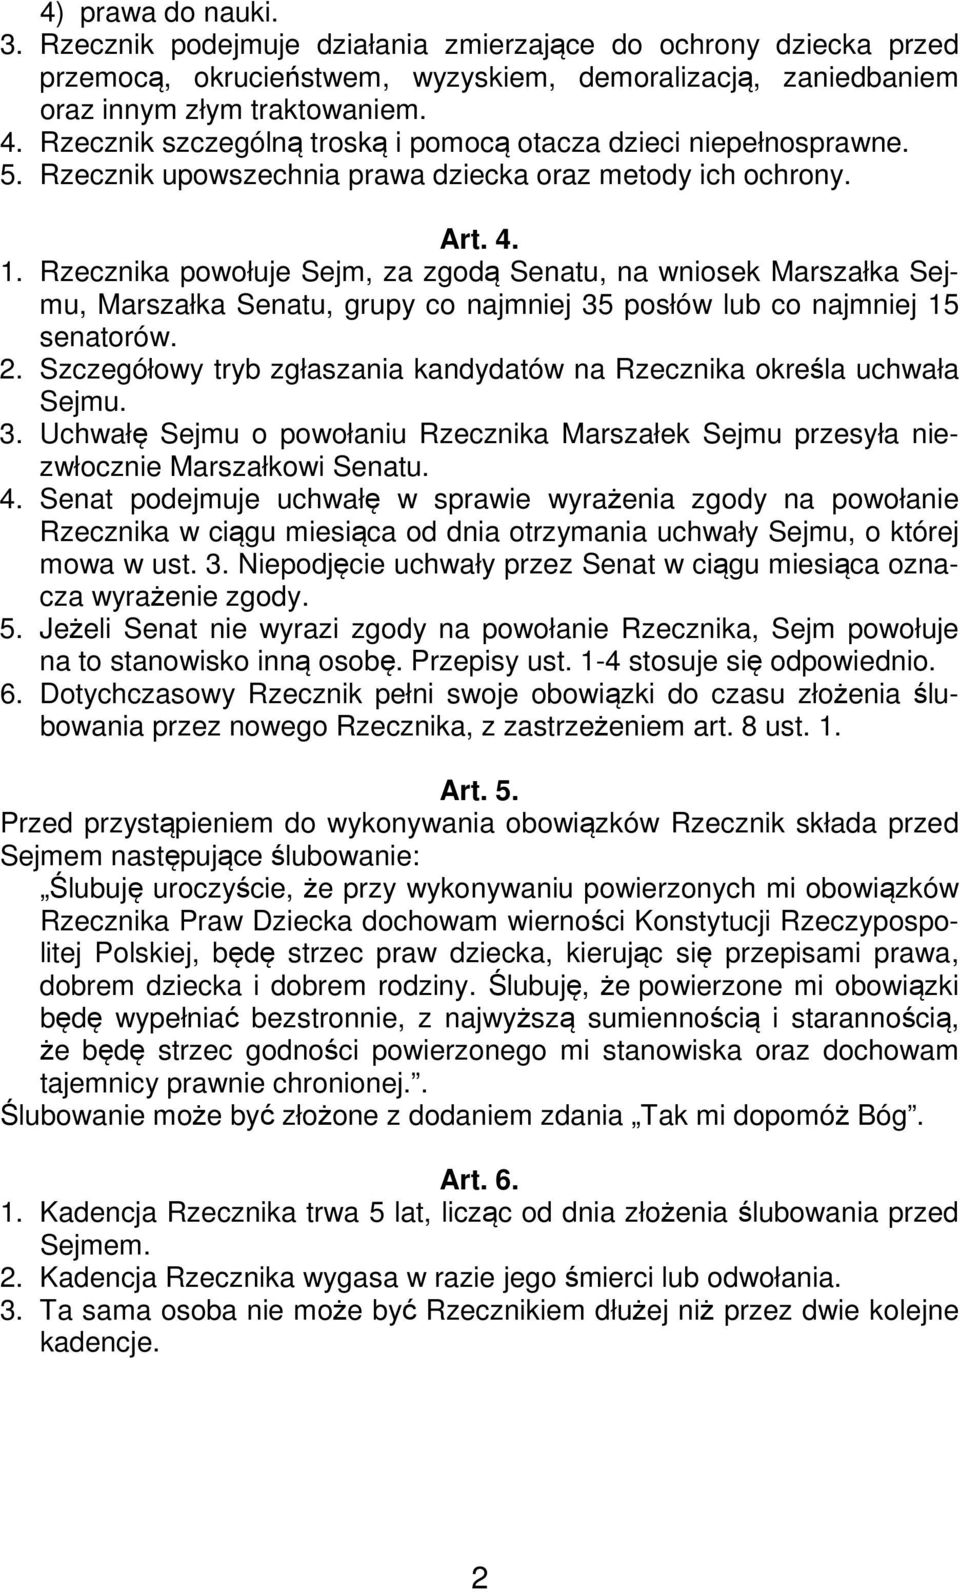 Rzecznika powołuje Sejm, za zgodą Senatu, na wniosek Marszałka Sejmu, Marszałka Senatu, grupy co najmniej 35 posłów lub co najmniej 15 senatorów. 2.